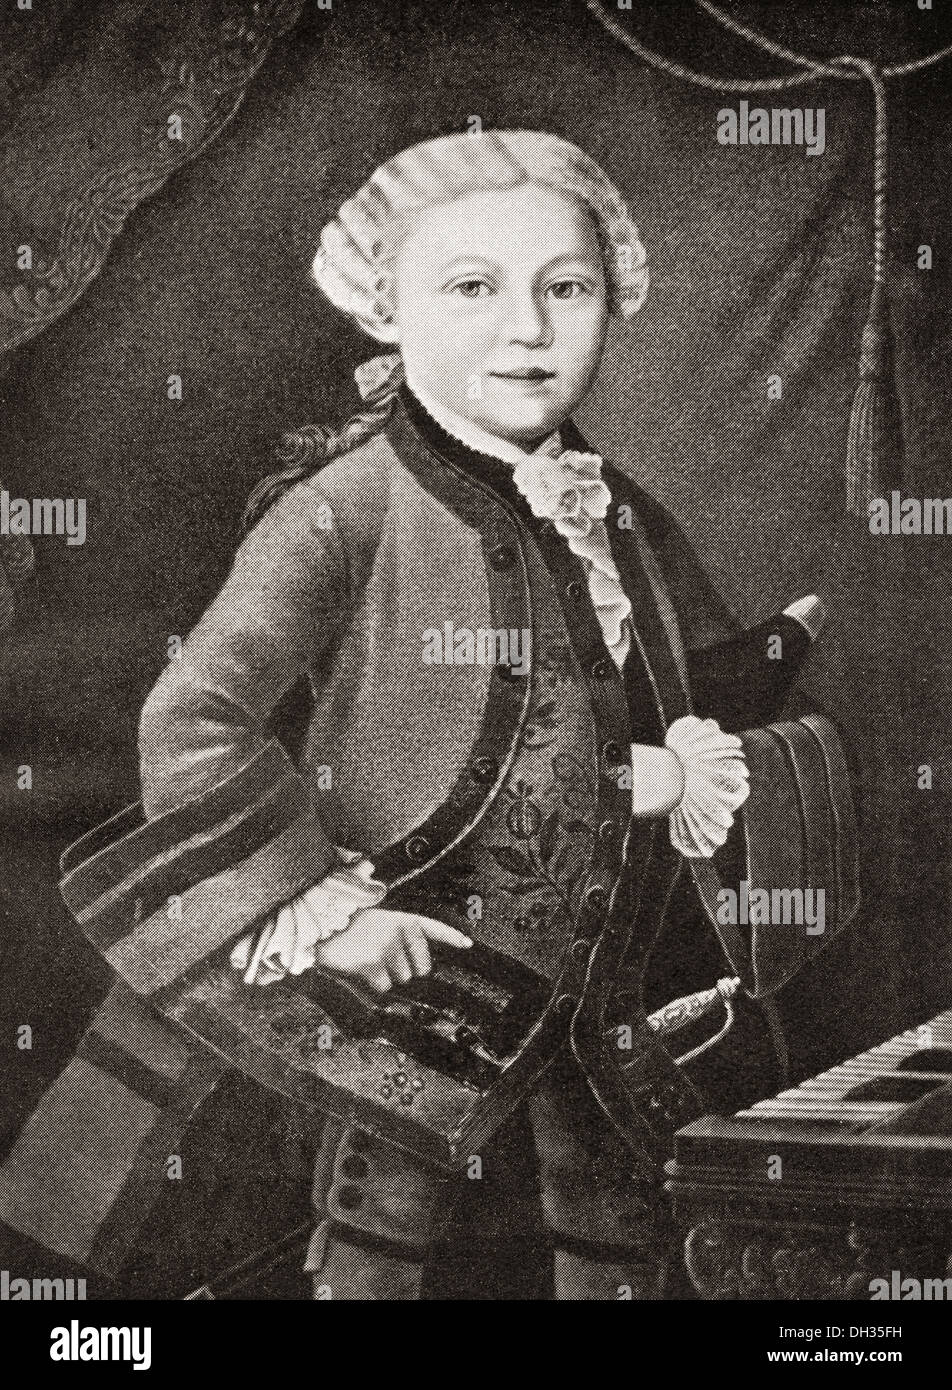 Wolfgang Amadeus Mozart, 1756-1791, als ein Kind. Österreichischer Komponist und Musiker. Stockfoto